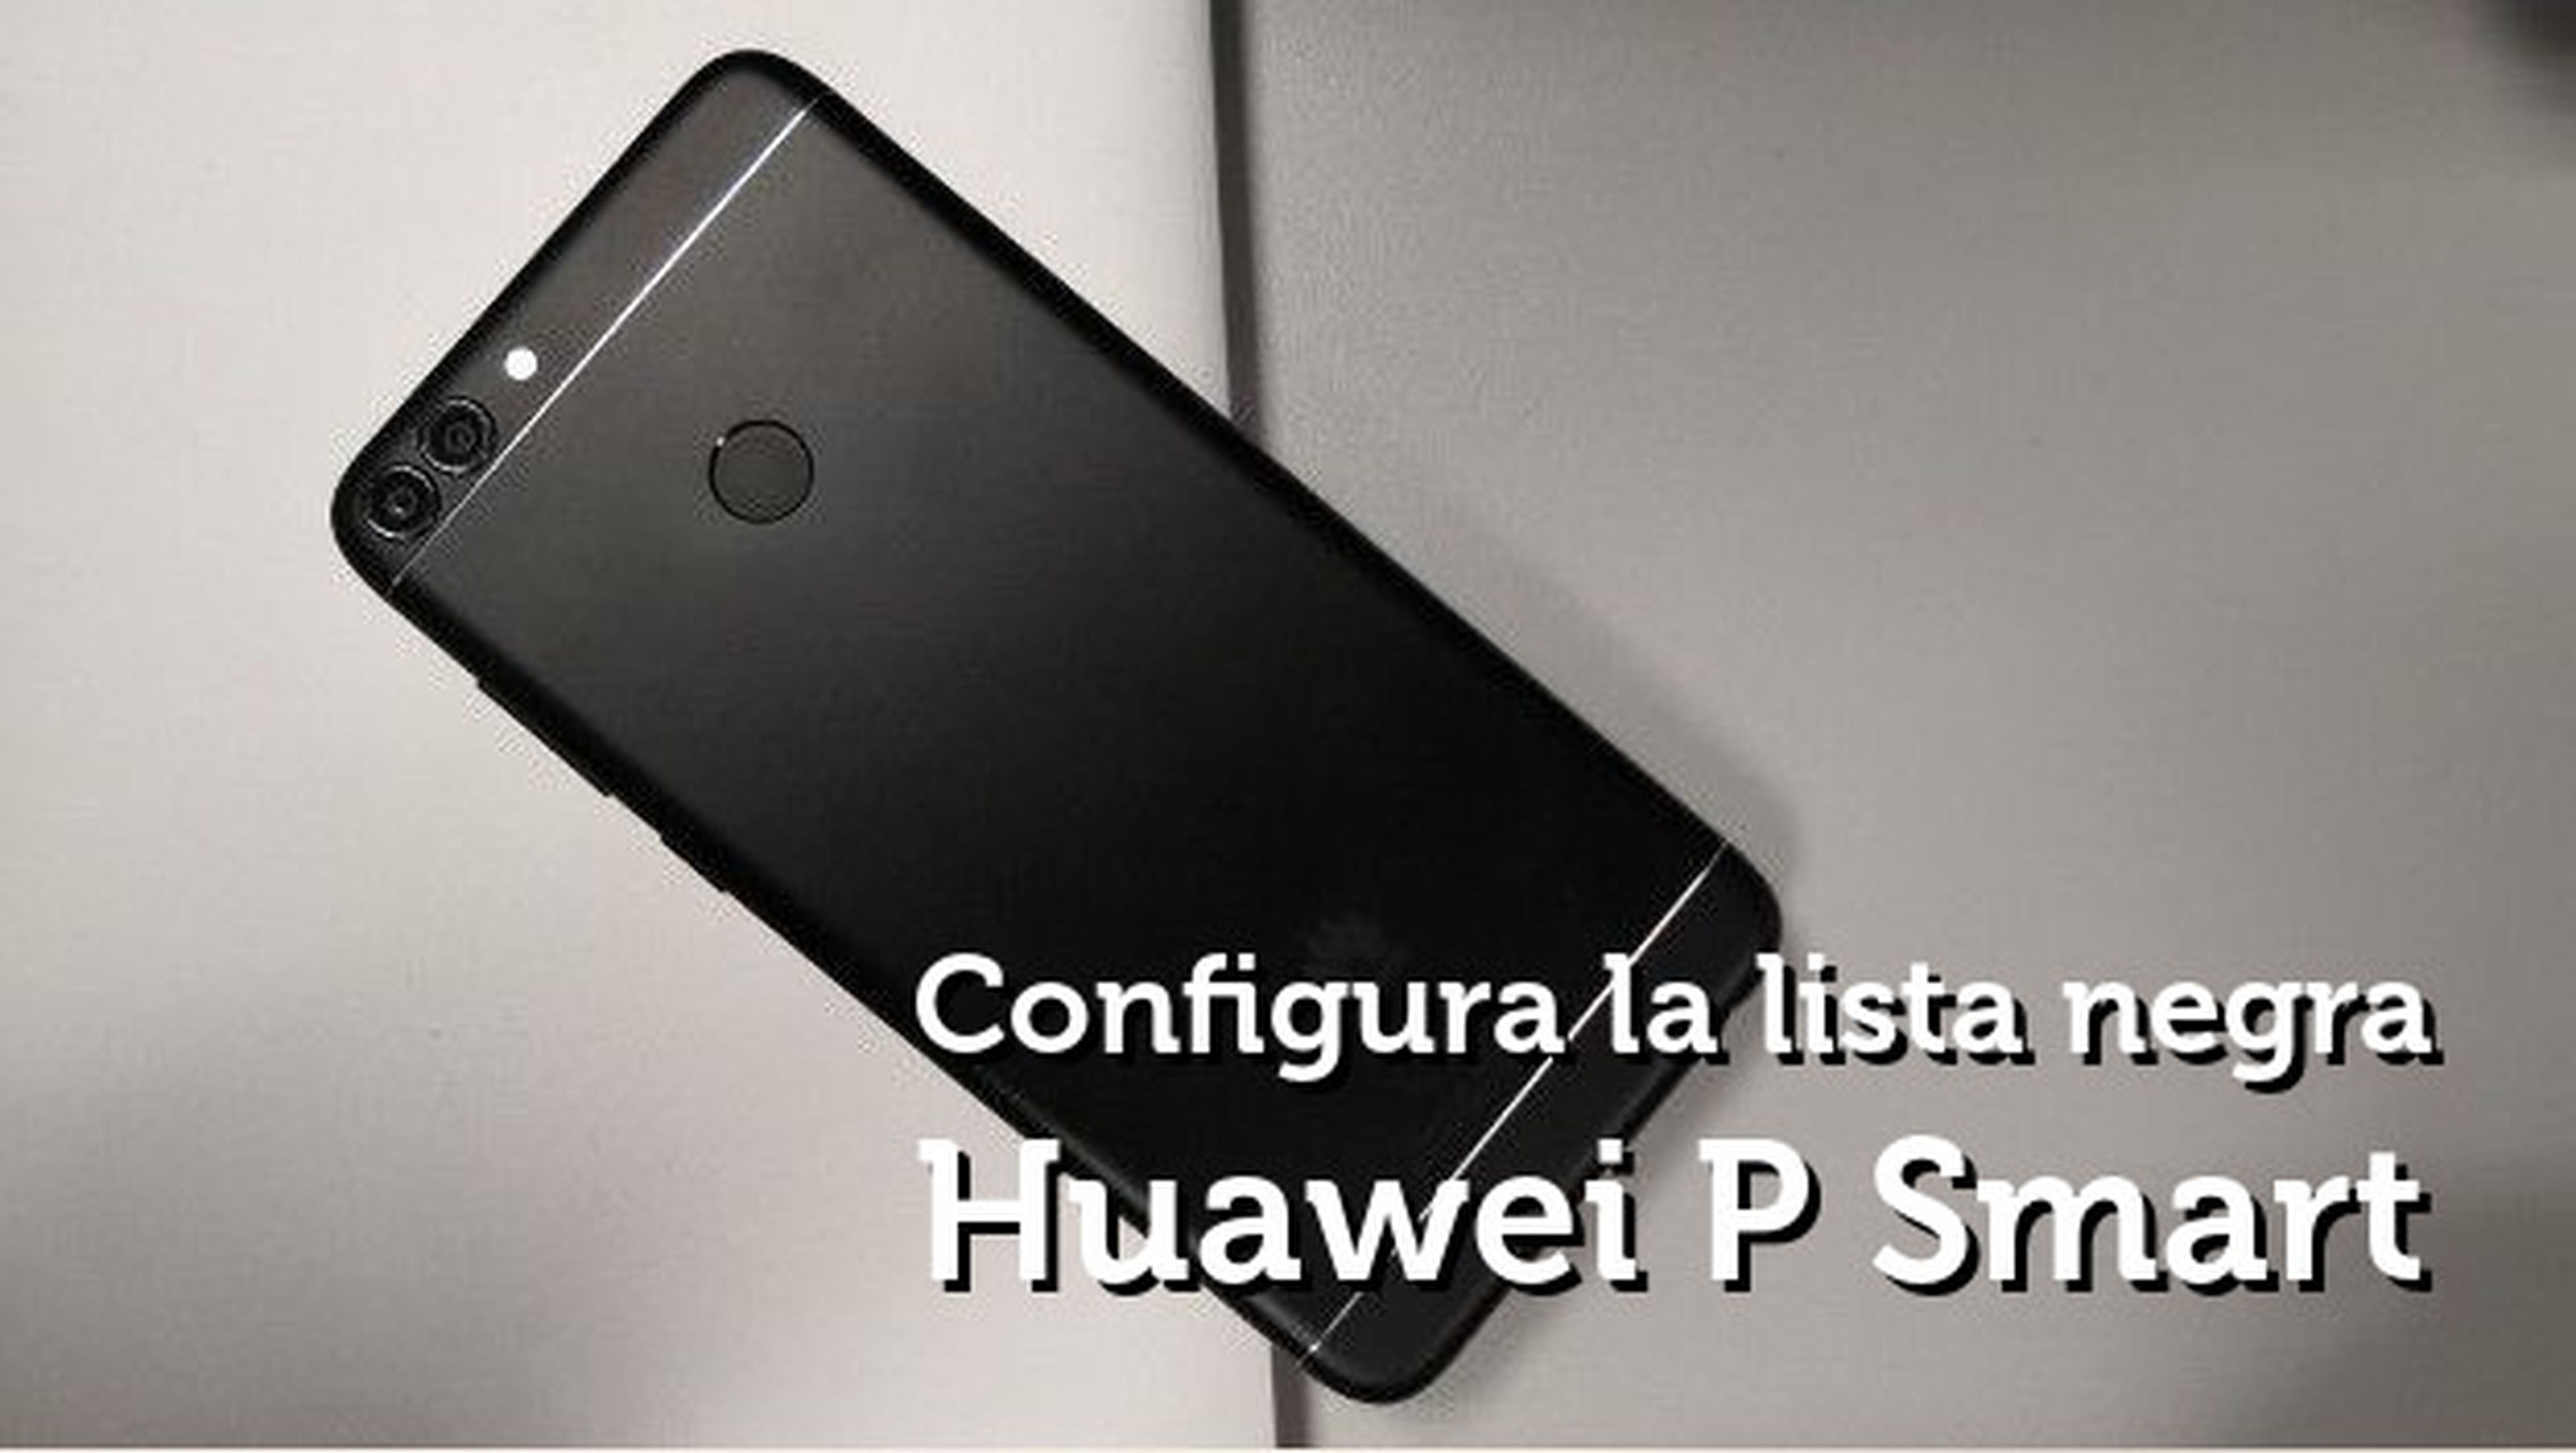 Huawei P smart - lista negra